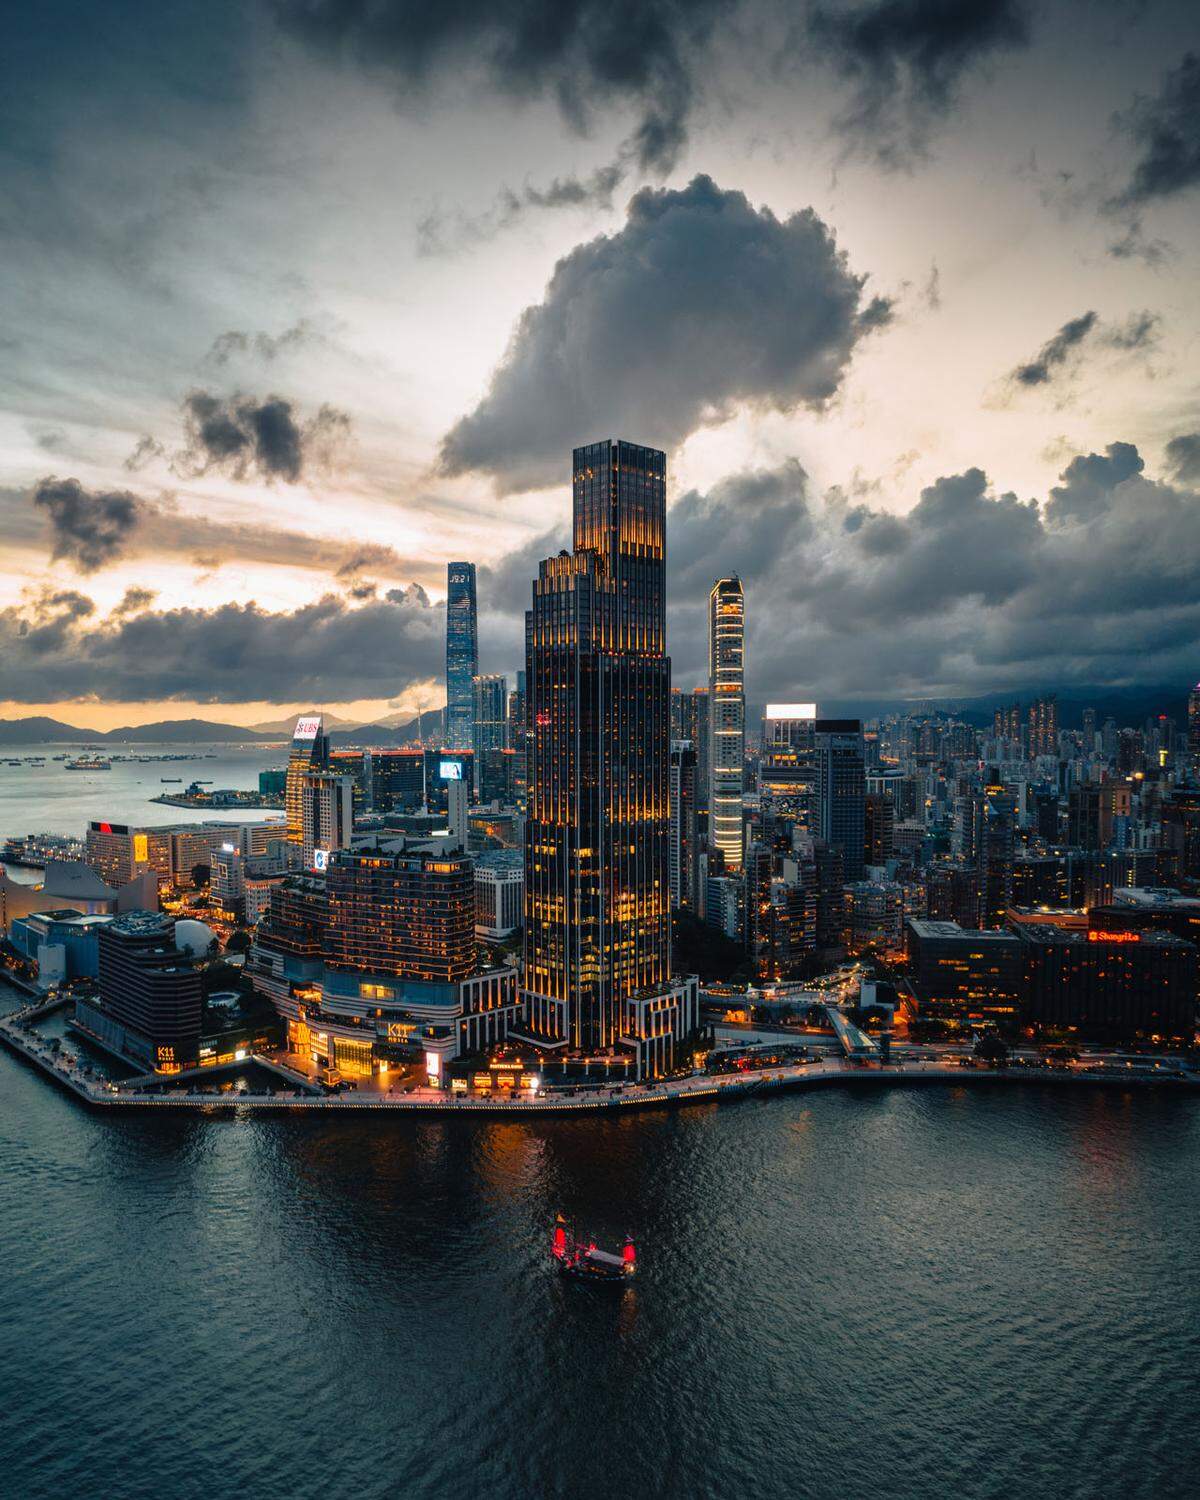 "Keine natürliche Landschaft im eigentlichen Sinn", meint ein Fotograf aus Hongkong. Aber das Rosewood Hotel und die Wolkenkratzer, die ganze Skyline von Hongkong - die charakteristischen Gebäude würden eine "Stadtlandschaft" darstellen.